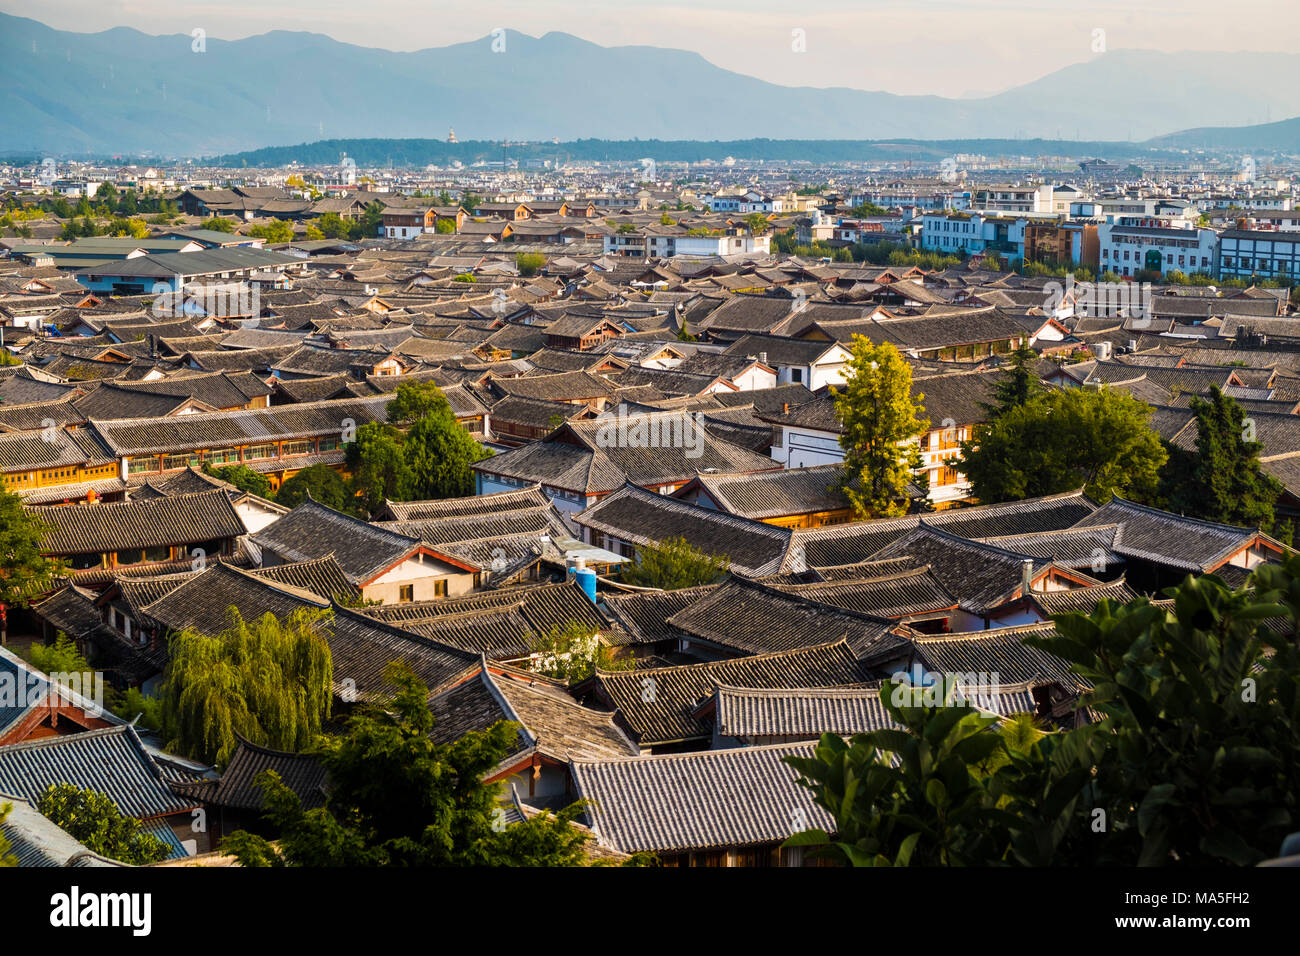 La vieille ville de Lijiang, Lijiang, Yunnan, Chine, Asie, Asiatique, l'Asie orientale, Extrême-Orient Banque D'Images